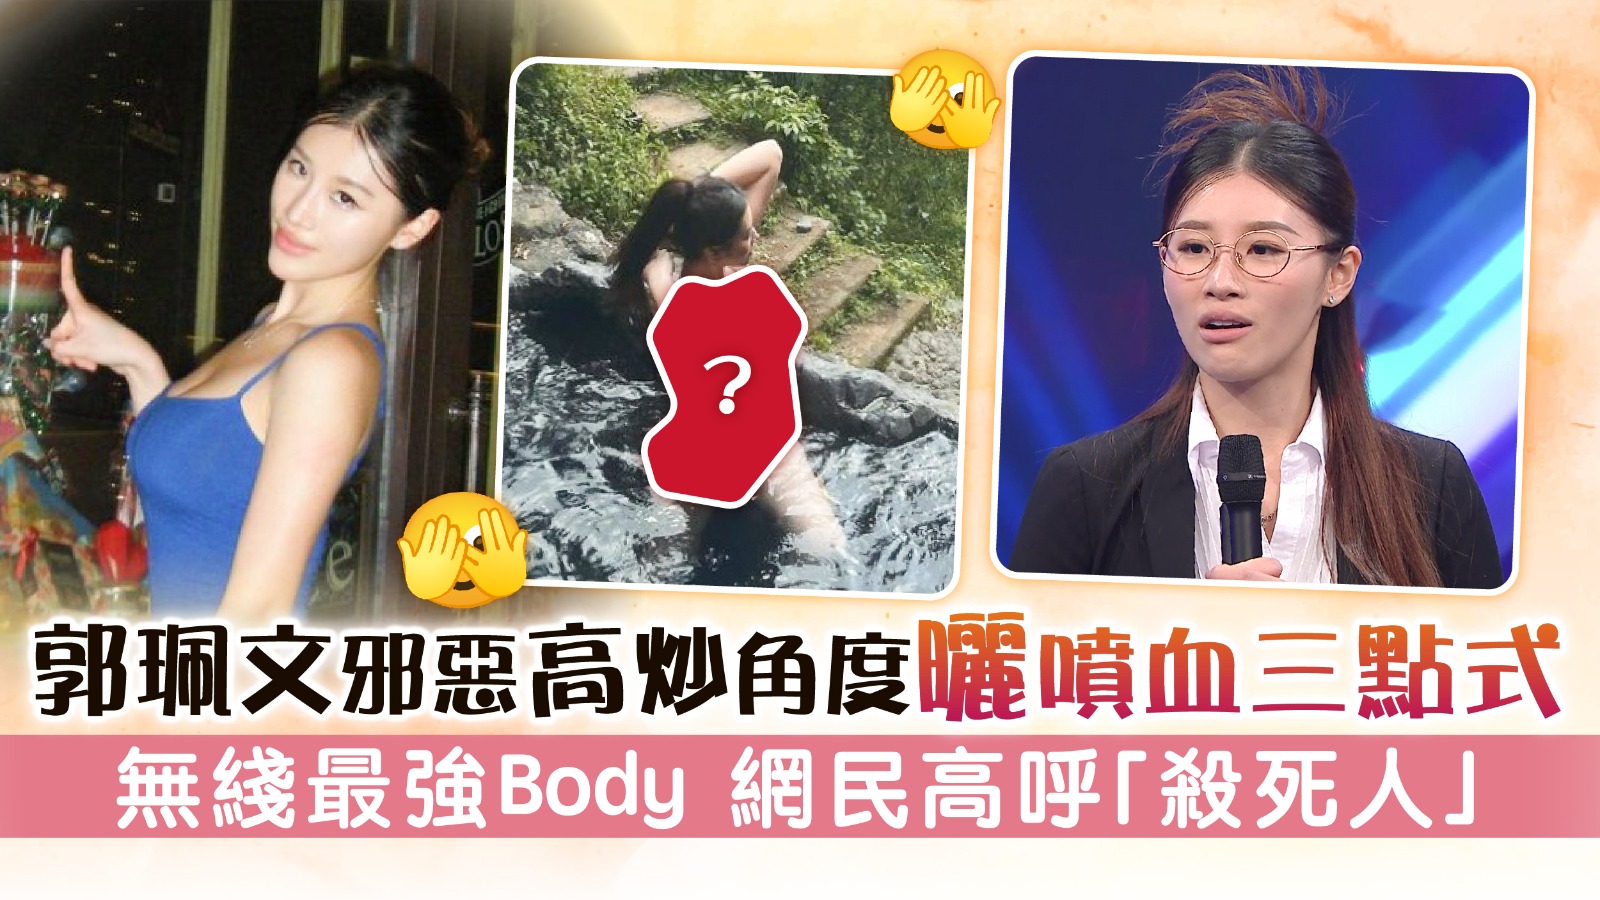 L’angle maléfique et très médiatisé de Kwok Pei-wen montre le corps le plus puissant sans fil à trois points qui jaillit du sang. Les internautes ont scandé “Tuez les gens” La vie à Hong Kong – À la recherche de bons endroits à Hong Kong.